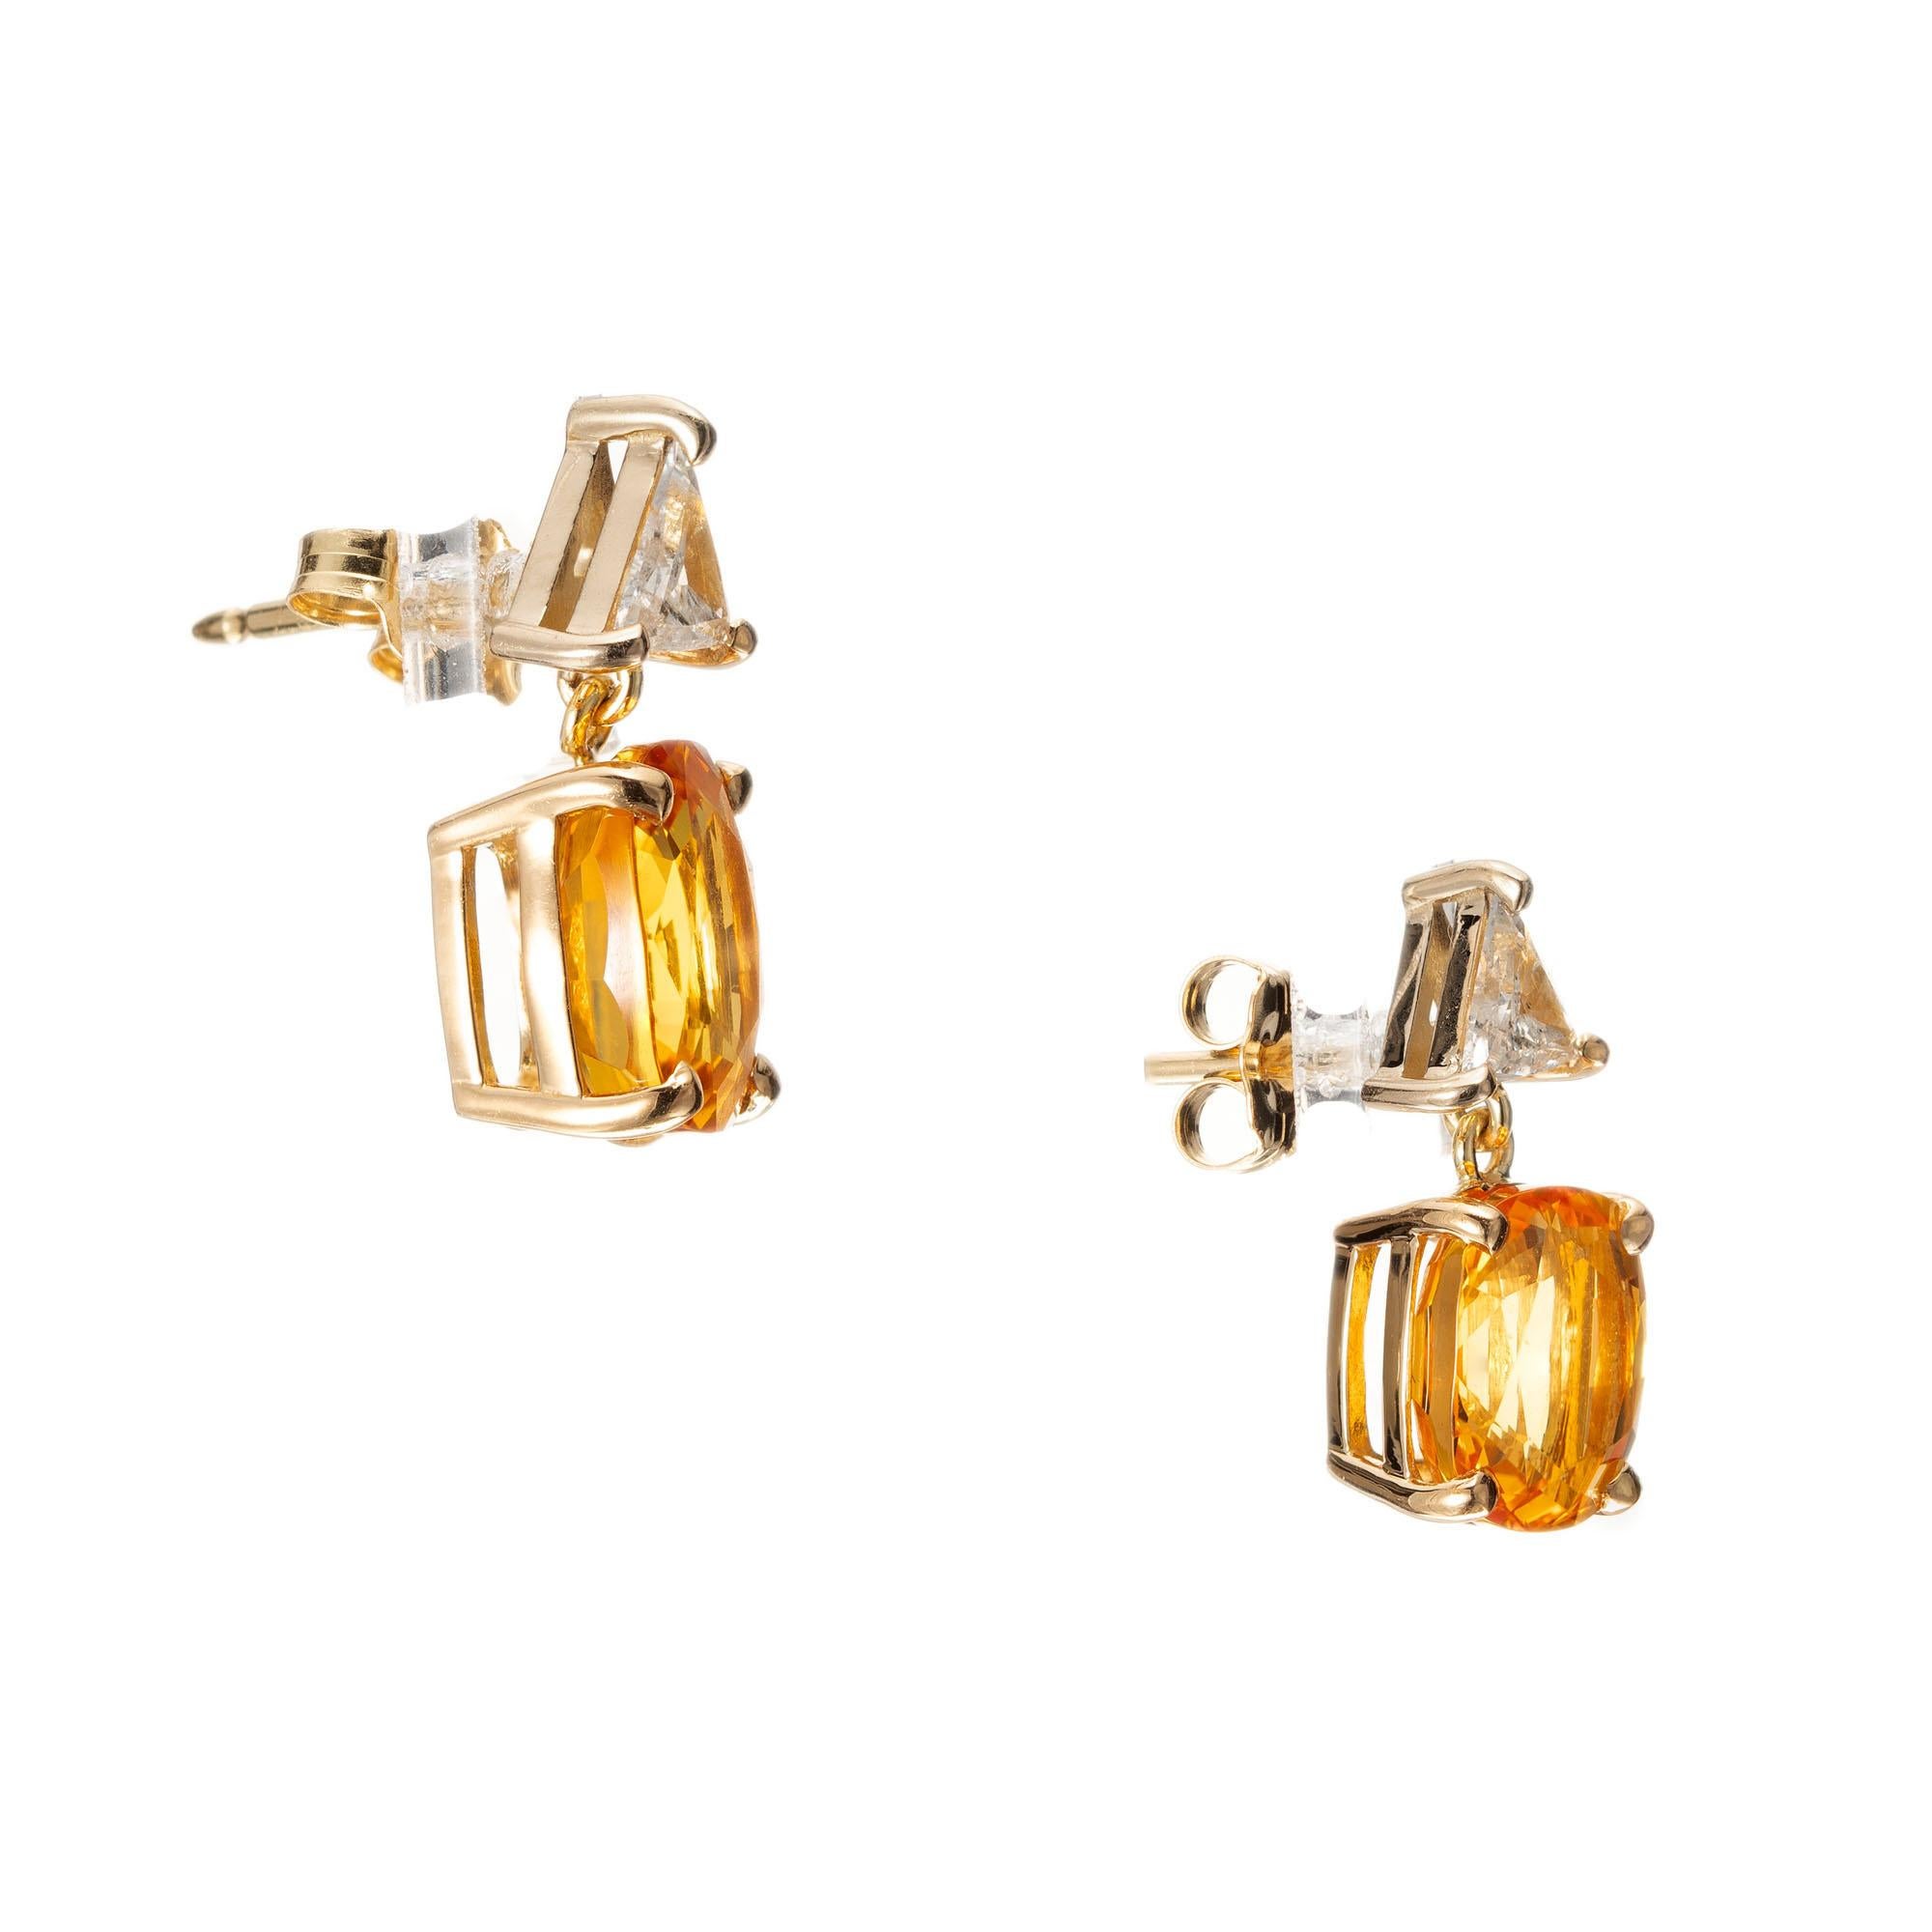 GIA-zertifizierte Saphir- und Diamant-Ohrringe mit Ohrgehänge. 2 orange-gelbe Saphire im Kissenschliff. Berylliumbehandelt für eine leuchtend orangegelbe Farbe. Akzentuiert mit 2 Diamanten im Trillantschliff in einer Fassung aus 18 Karat Gelbgold.